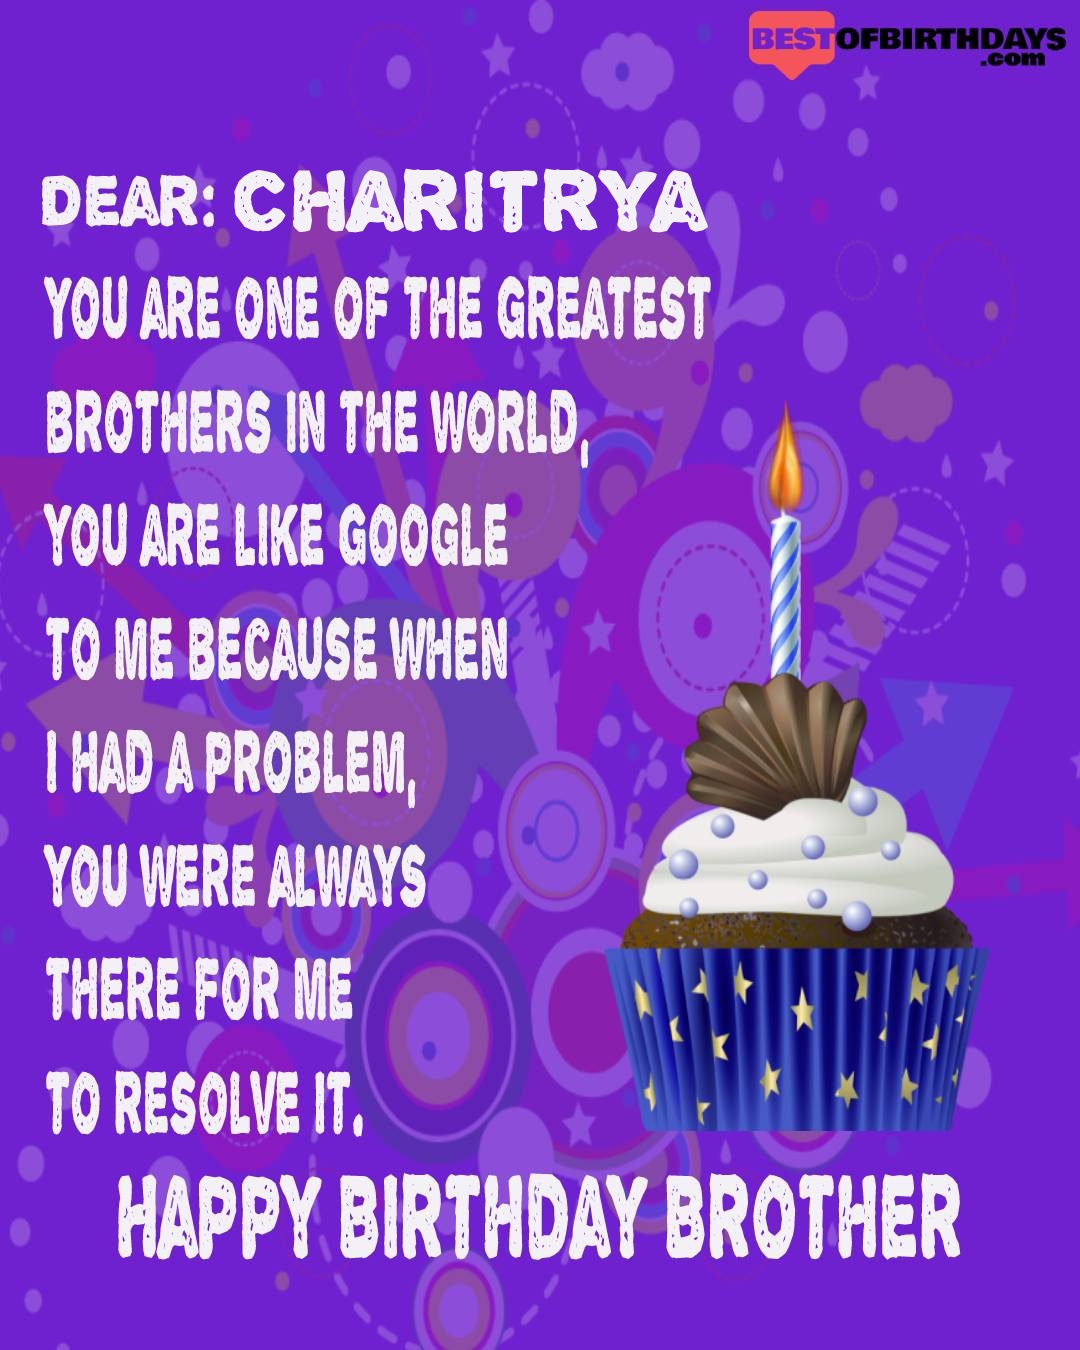 Happy birthday charitrya bhai brother bro